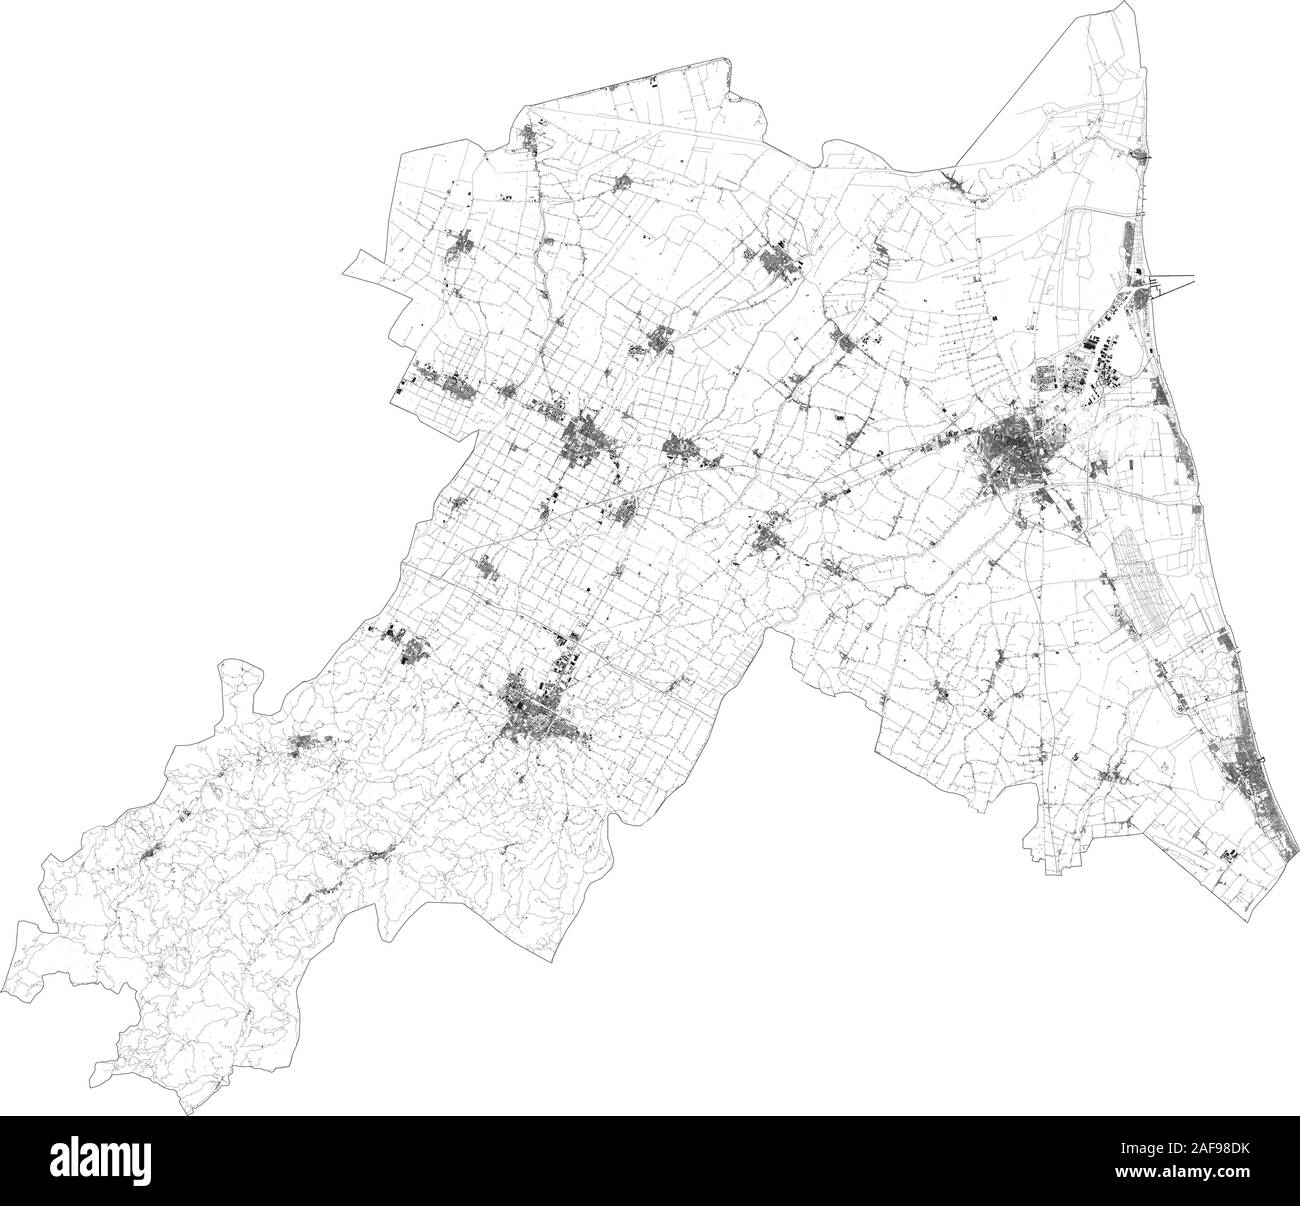 Sat-Karte der Provinz von Ravenna Städte und Straßen, Gebäude und Straßen der Umgebung. Region Emilia-Romagna, Italien. Karte Straßen Stock Vektor